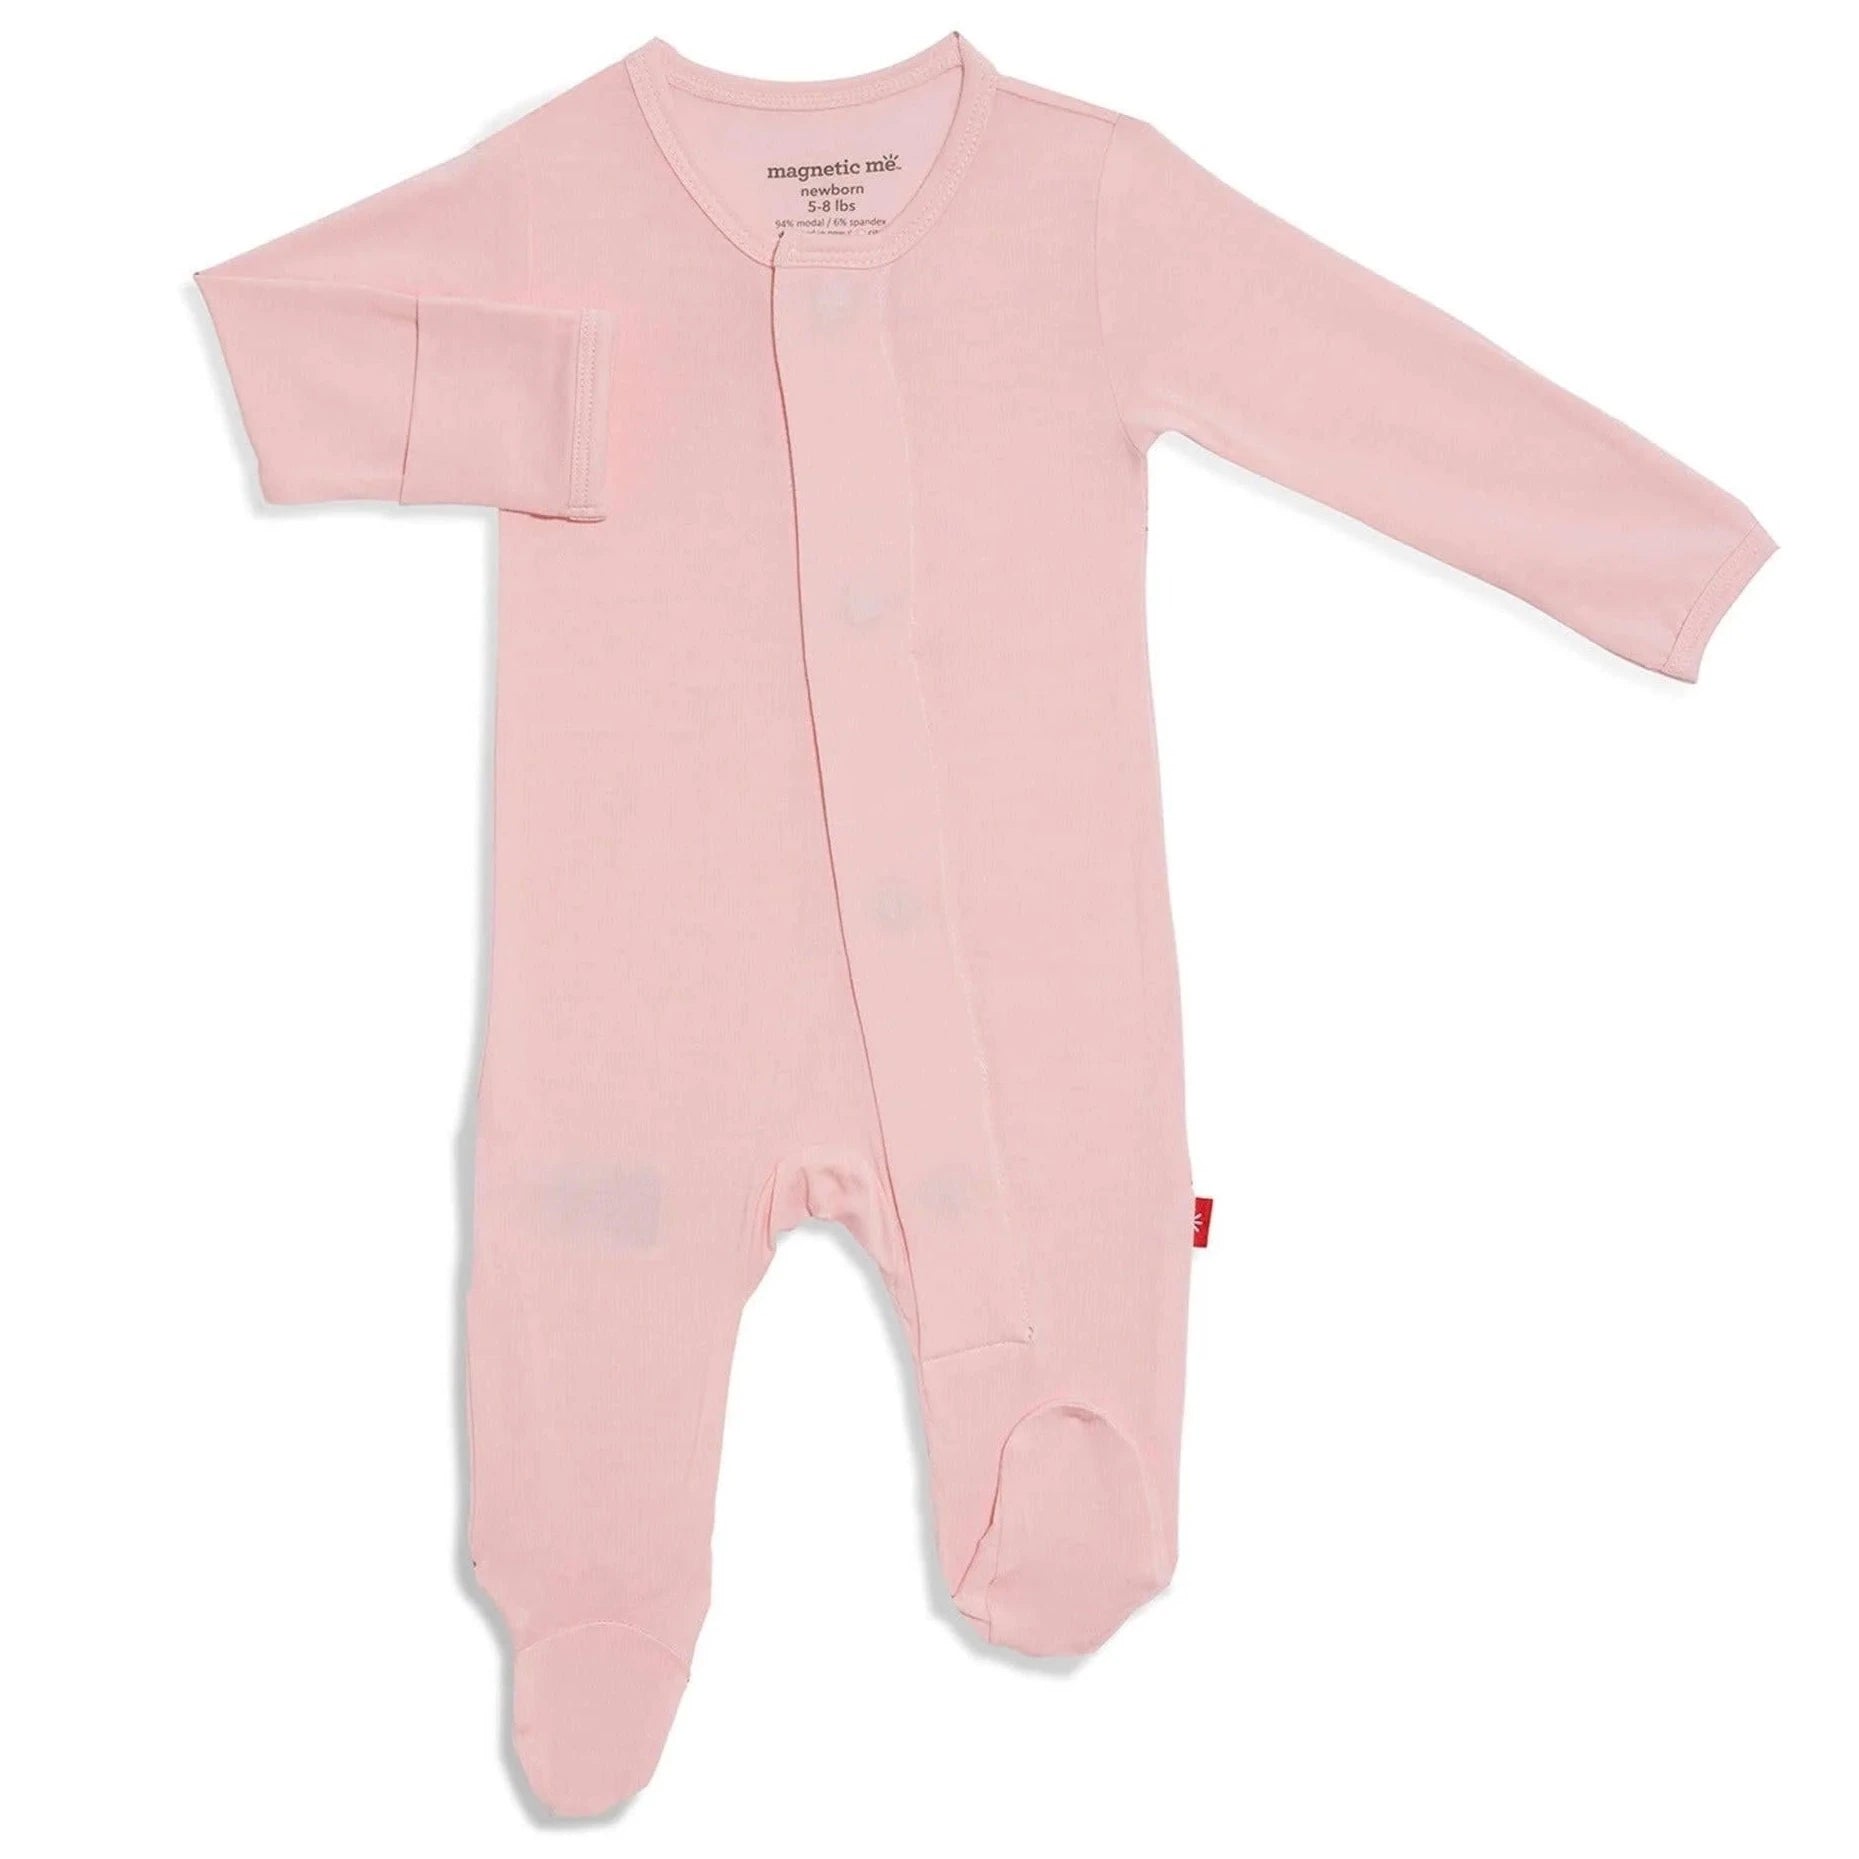 Pink long sleeve baby onesie